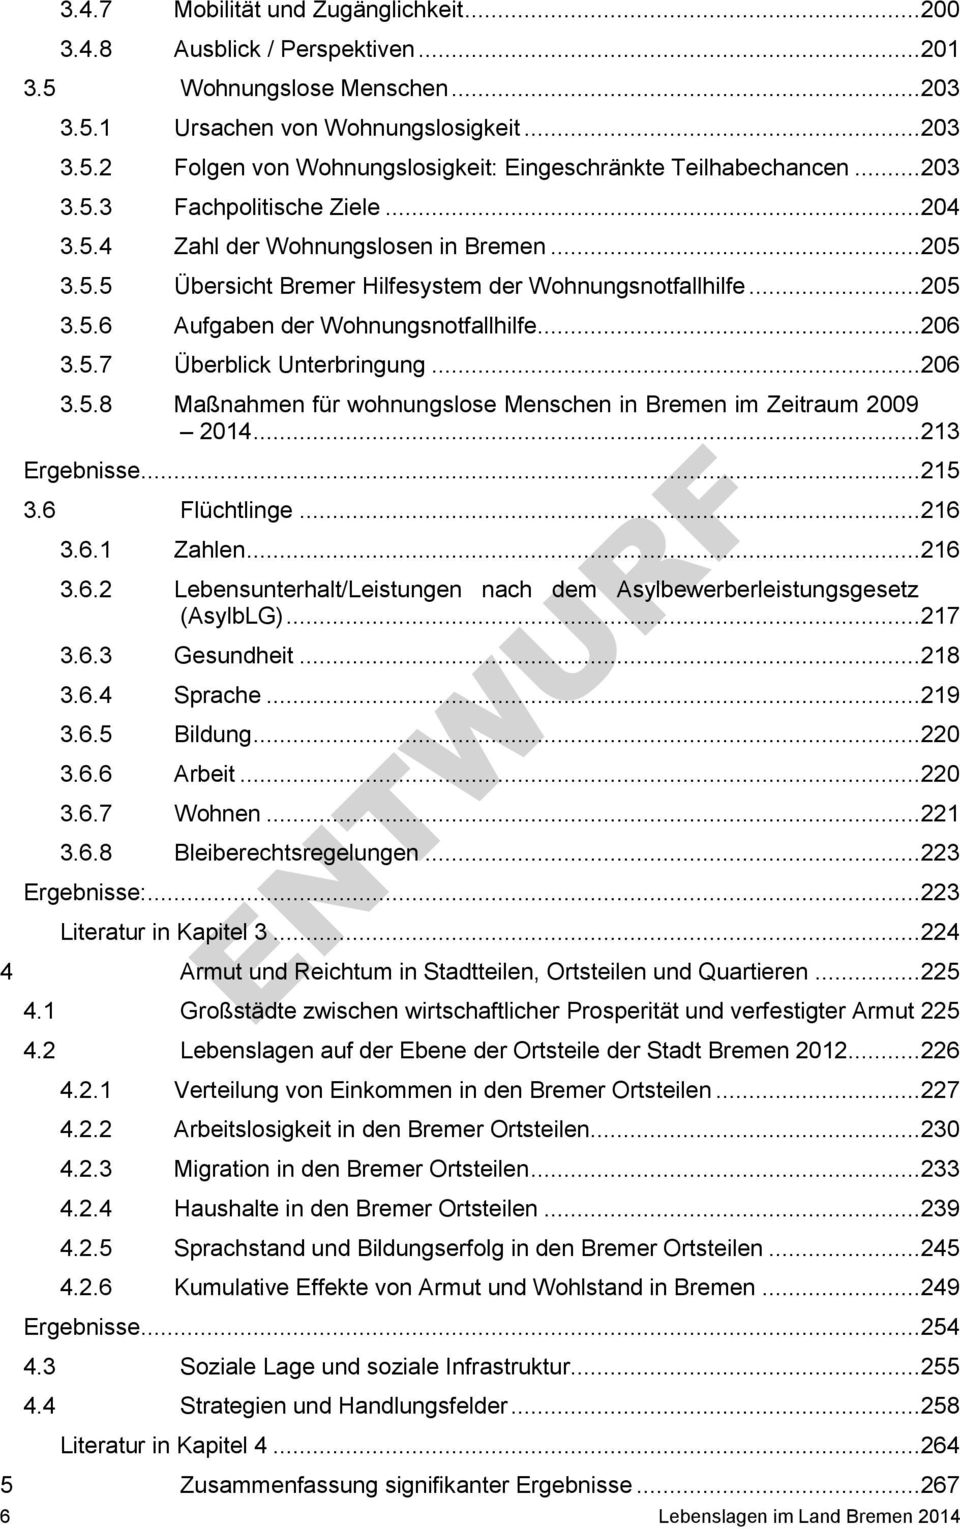 .. 206 3.5.7 Überblick Unterbringung... 206 3.5.8 Maßnahmen für wohnungslose Menschen in Bremen im Zeitraum 2009 2014... 213 Ergebnisse... 215 3.6 Flüchtlinge... 216 3.6.1 Zahlen... 216 3.6.2 Lebensunterhalt/Leistungen nach dem Asylbewerberleistungsgesetz (AsylbLG).